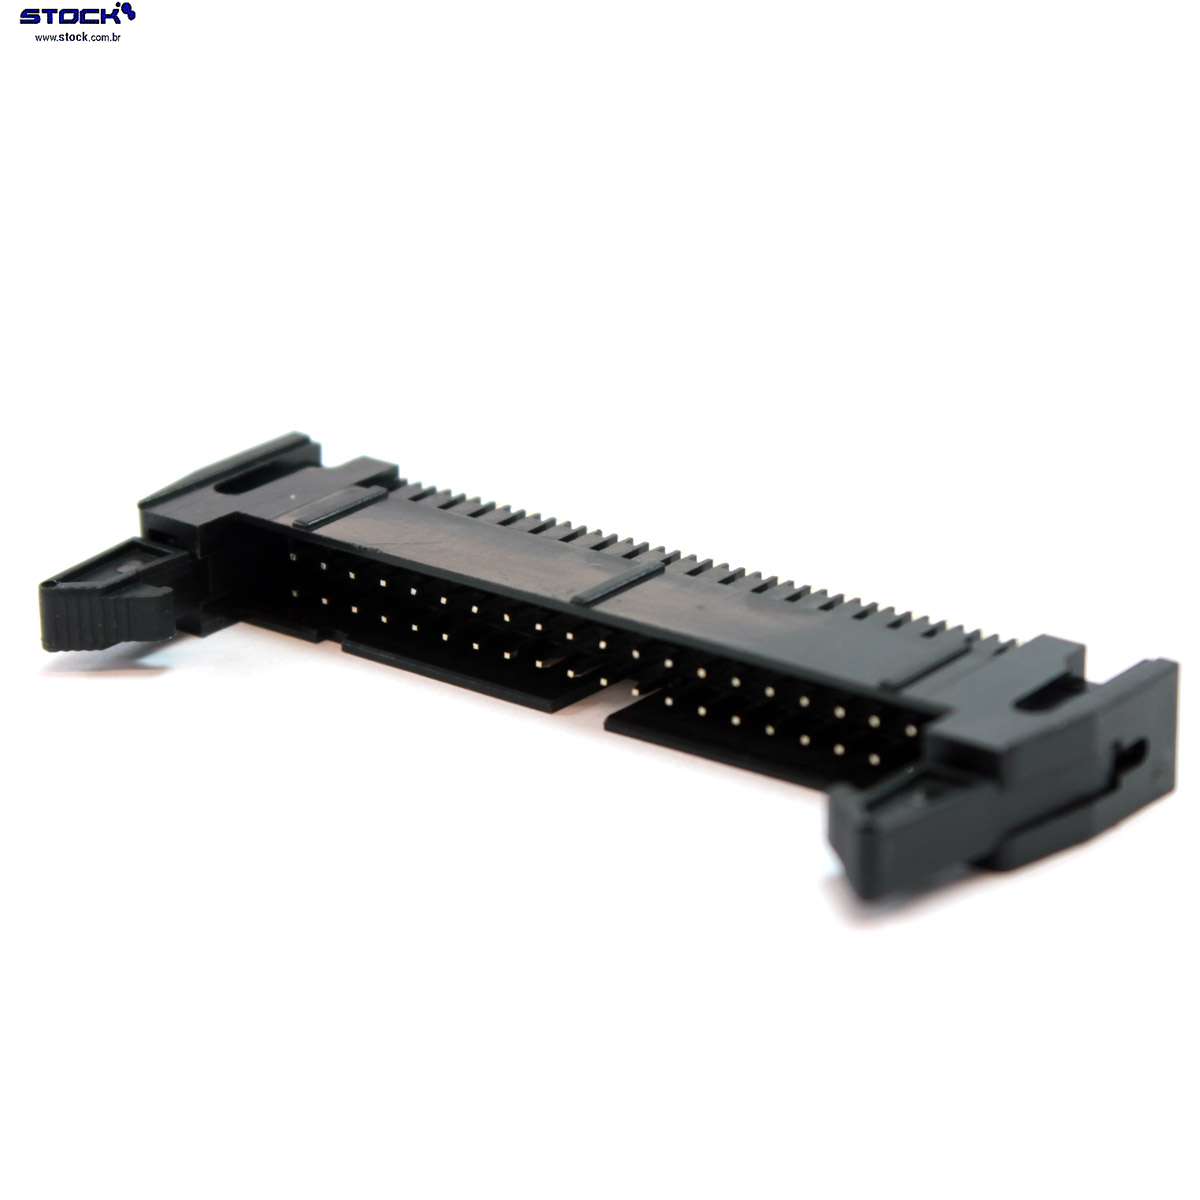 IDC Box Header com Ejetor longo p/ PCI 40 Pinos Macho Pitch 2,54mm - Fileira dupla – 02x20 180 Graus - Preto